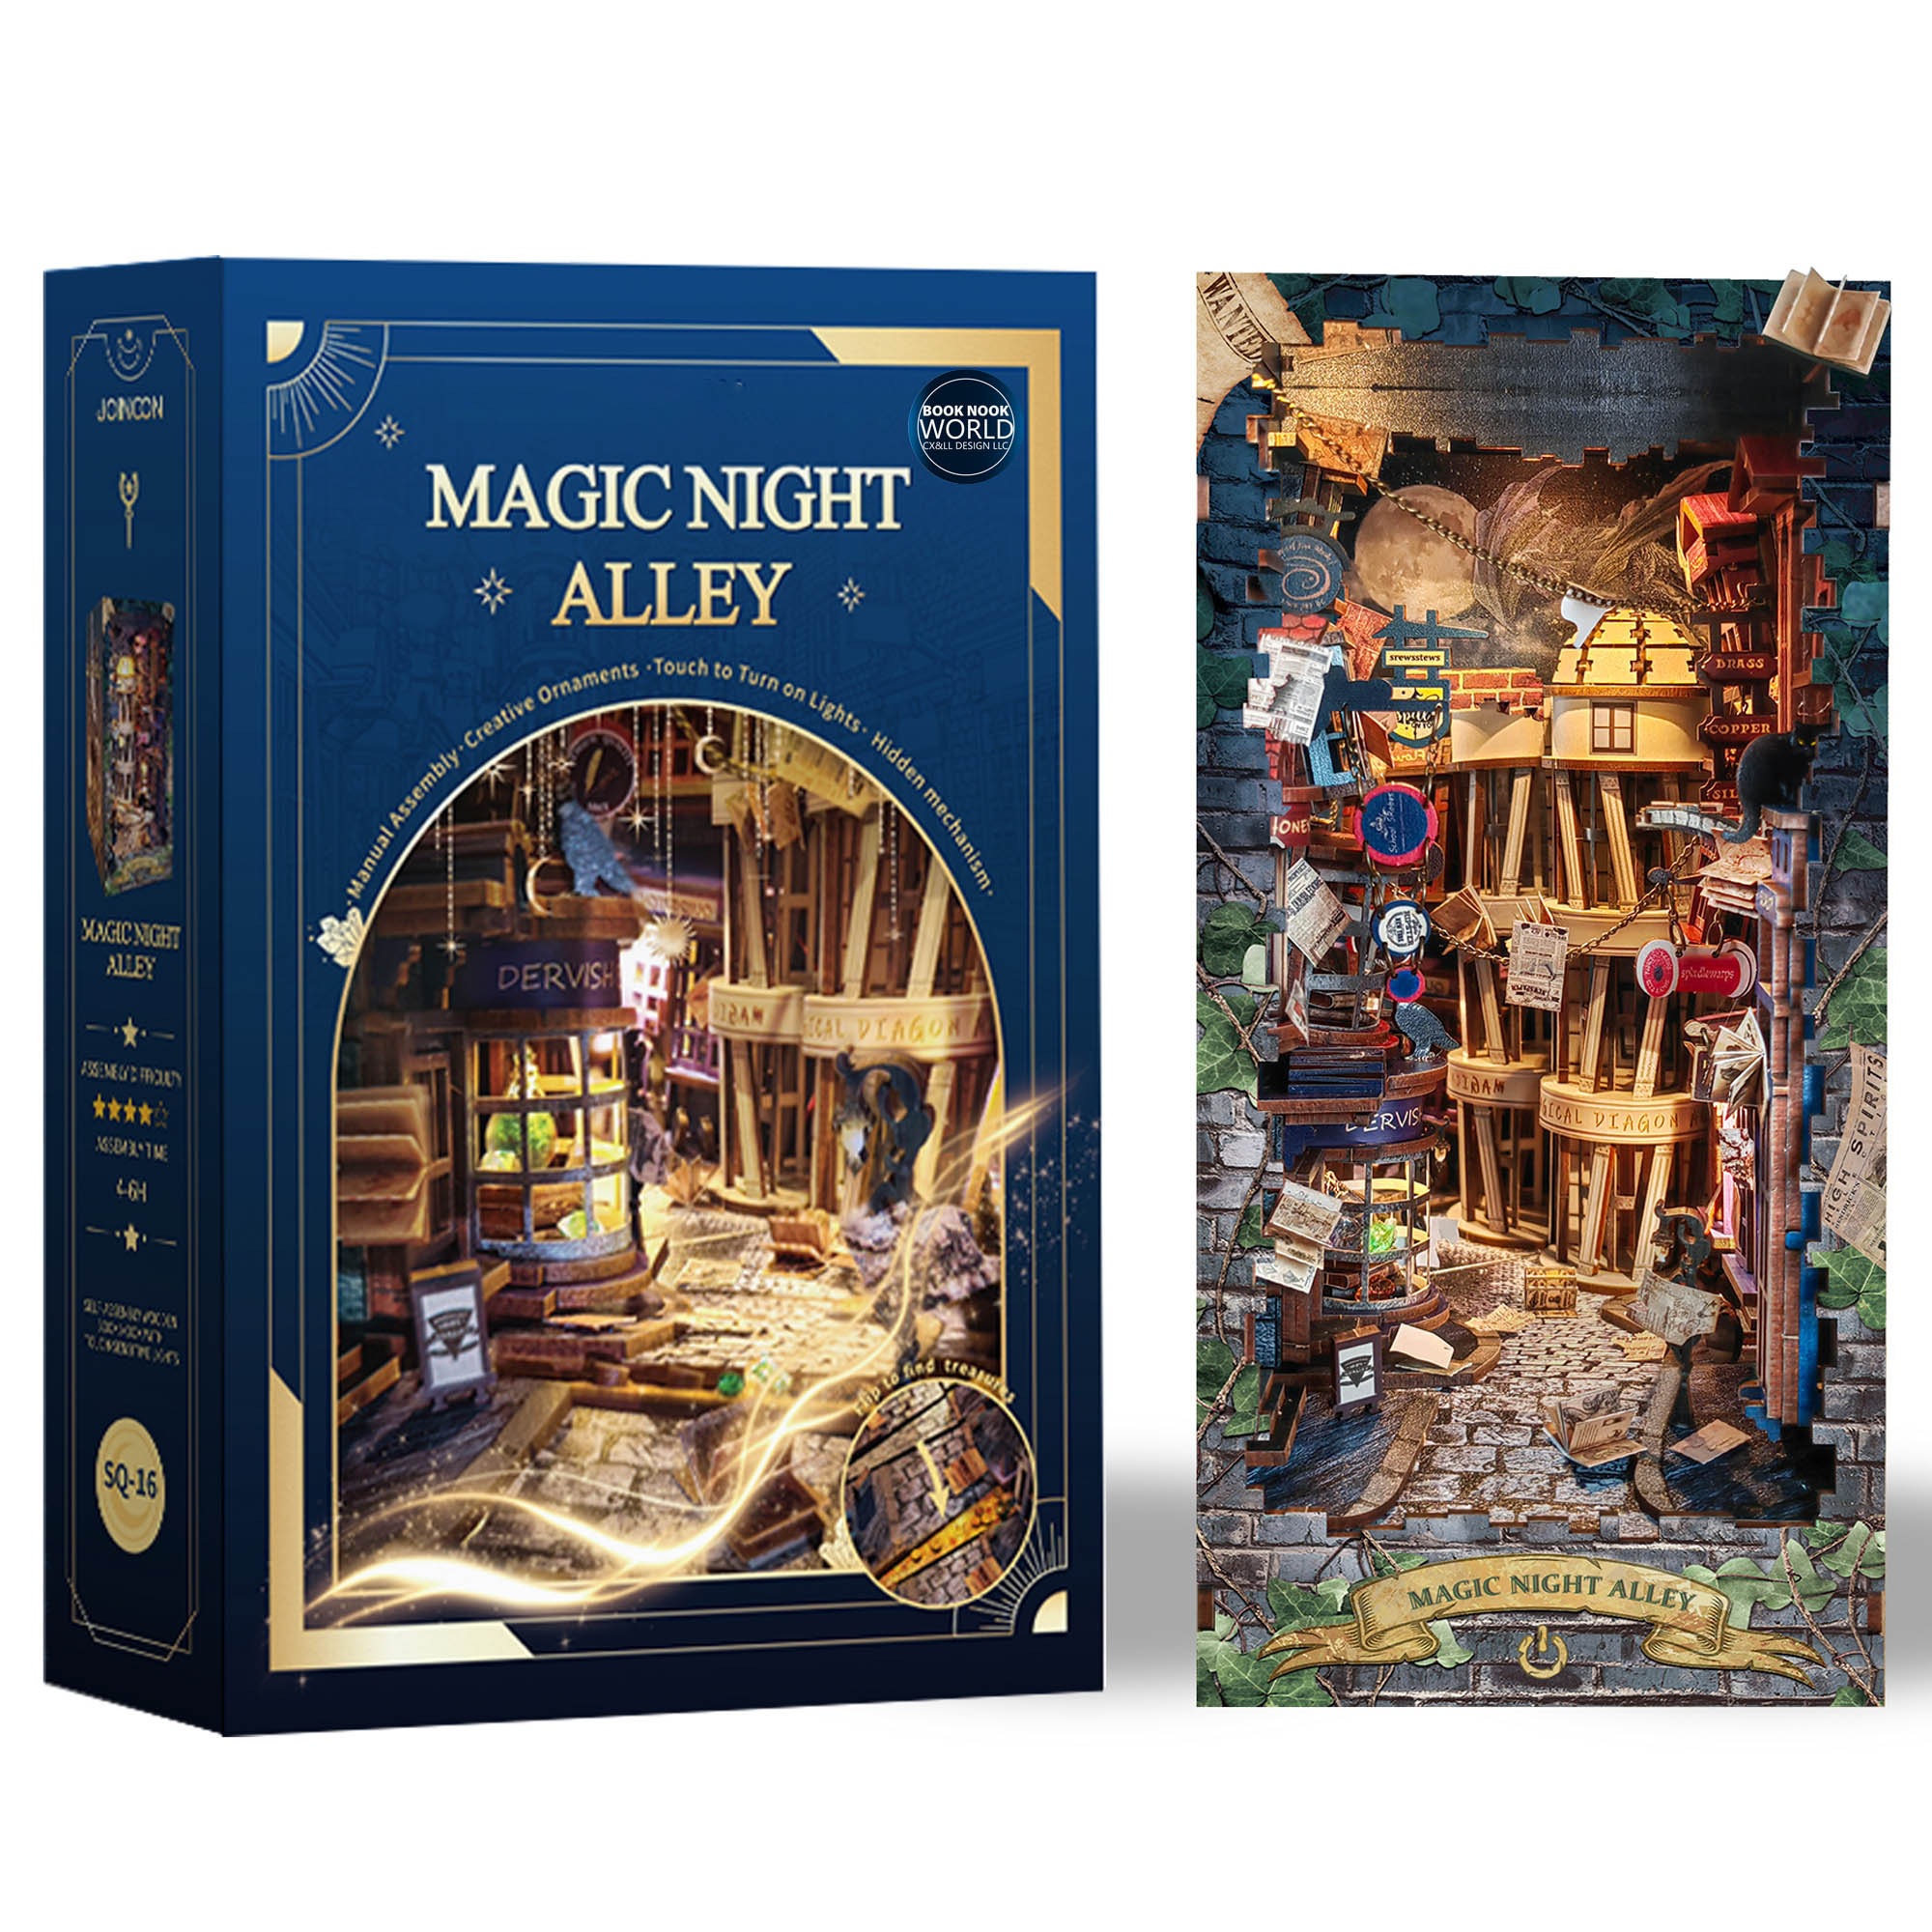 Diagon Alley | Magic Night Alley DIY Book Nook Kit